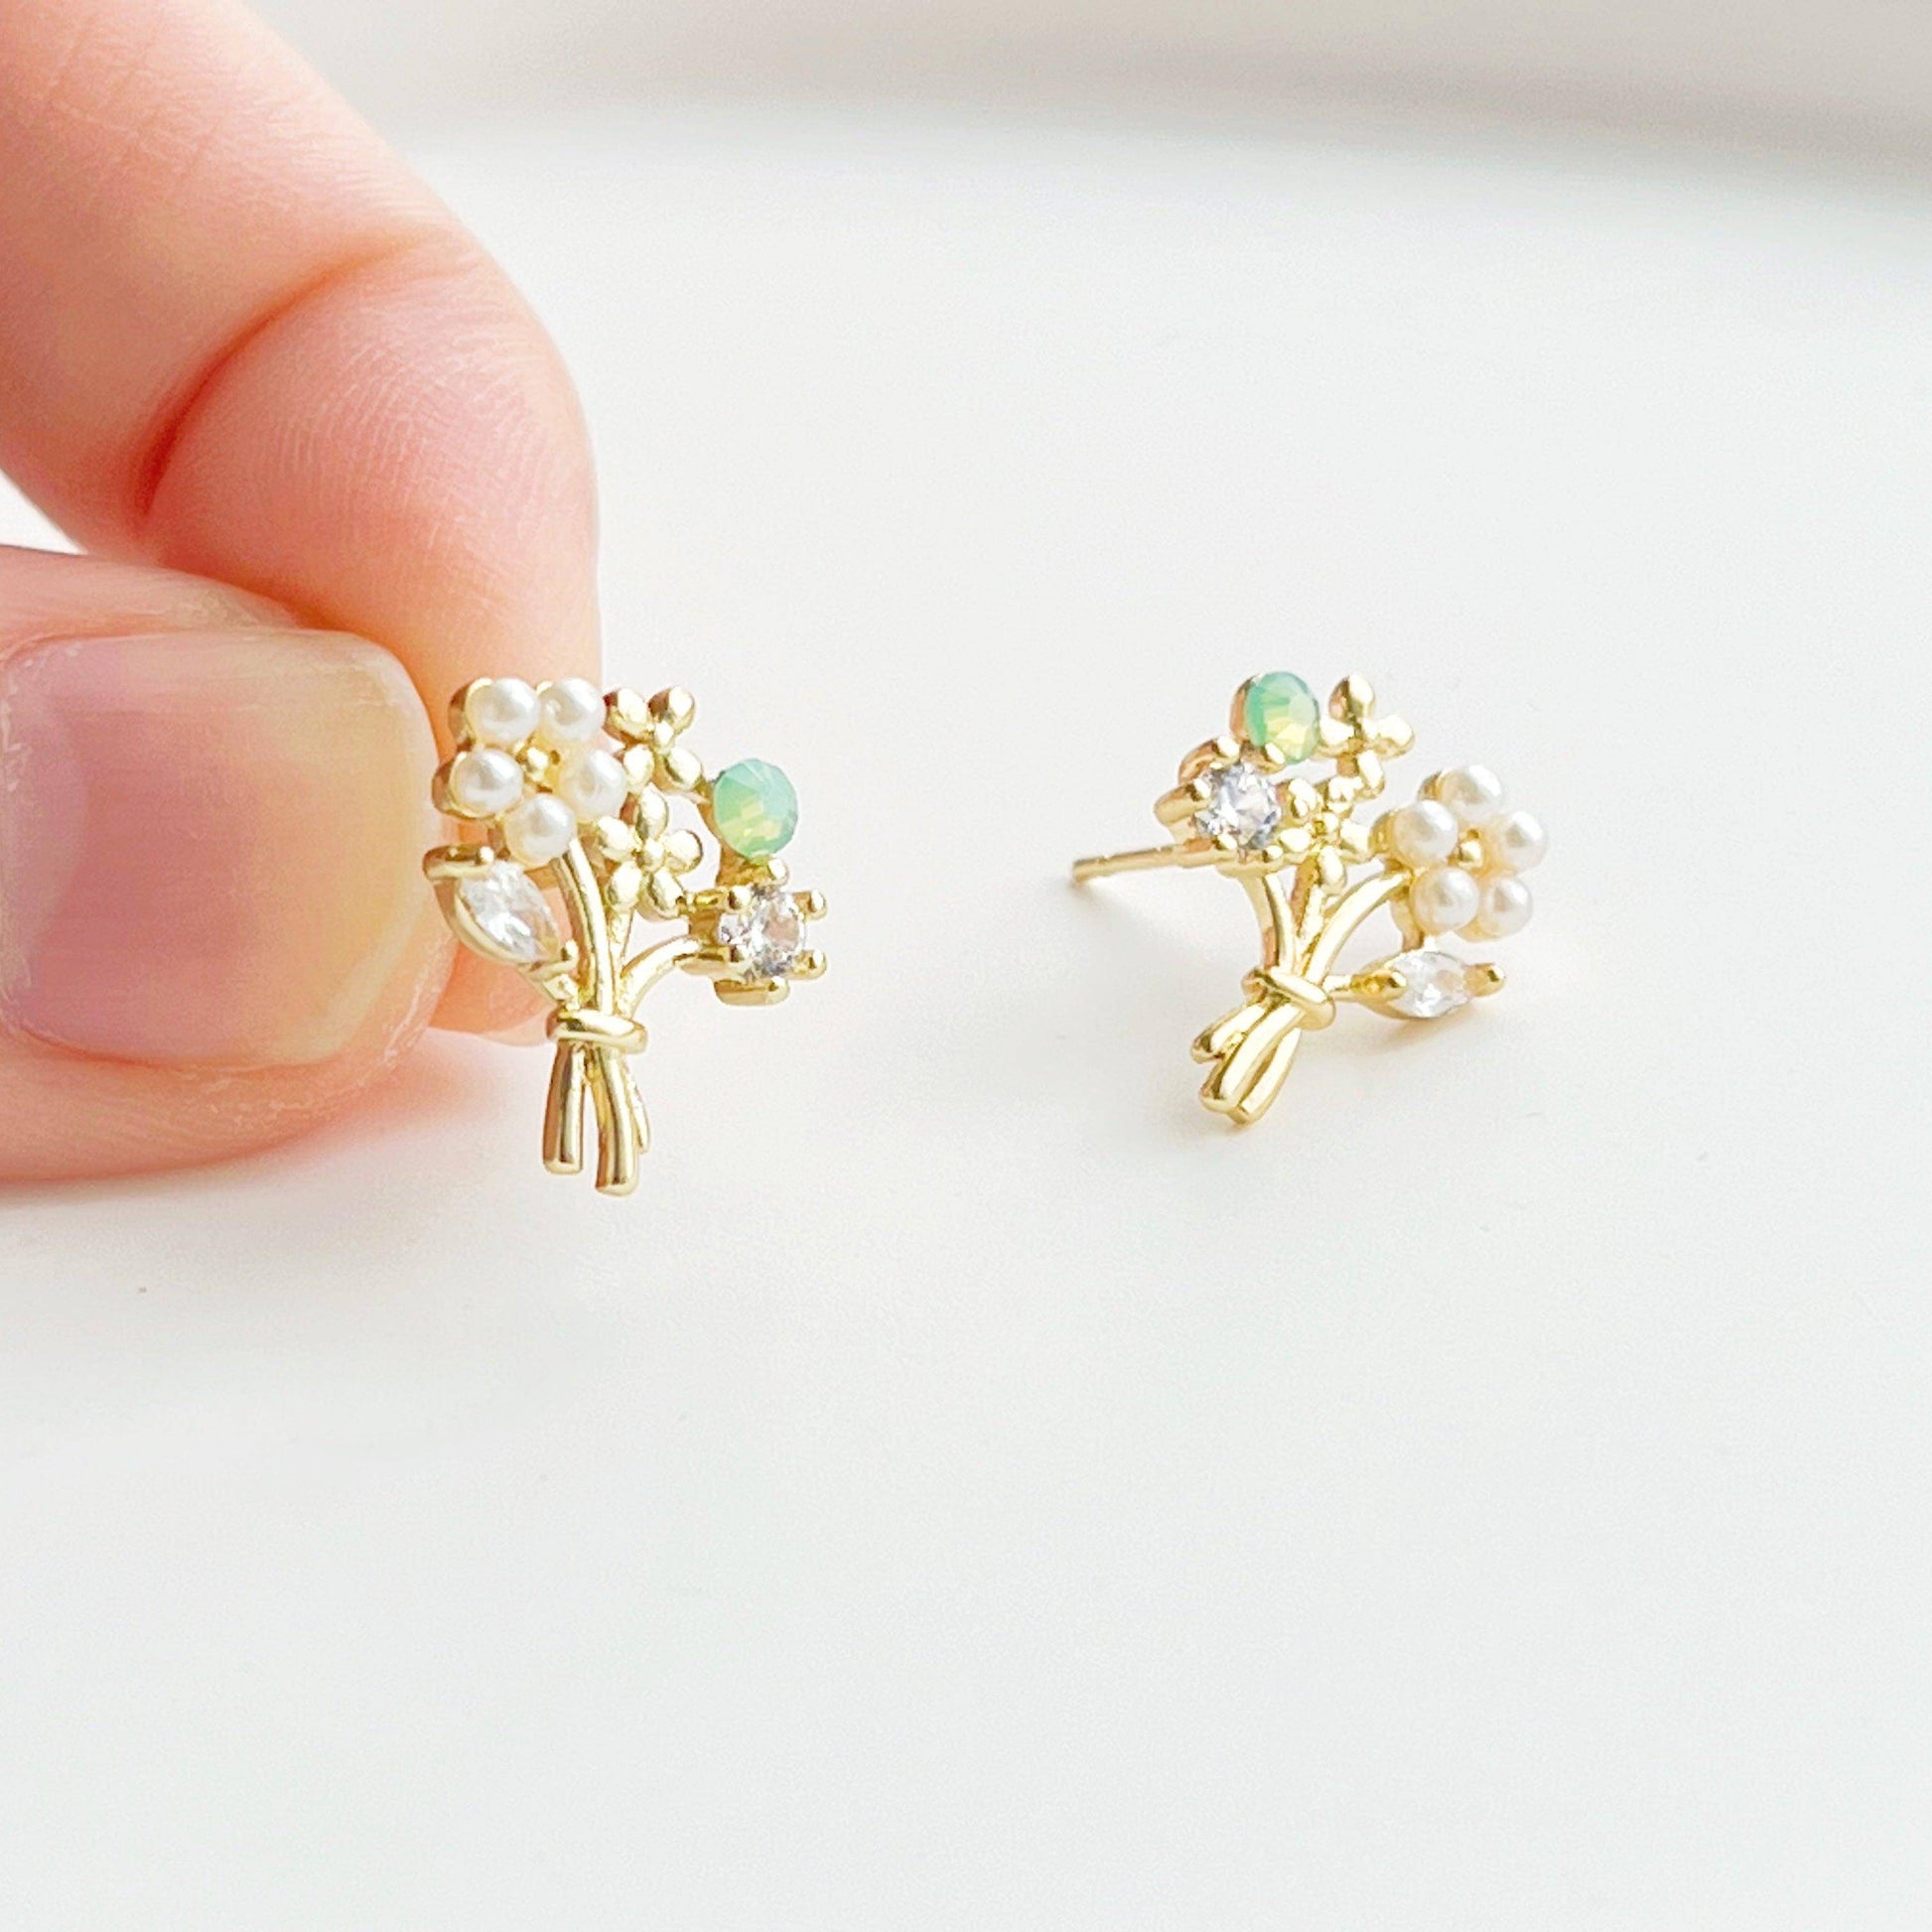 Flower Bouquet Earrings - Gold Flowers with Green Crystal Stud Earrings-Ninaouity